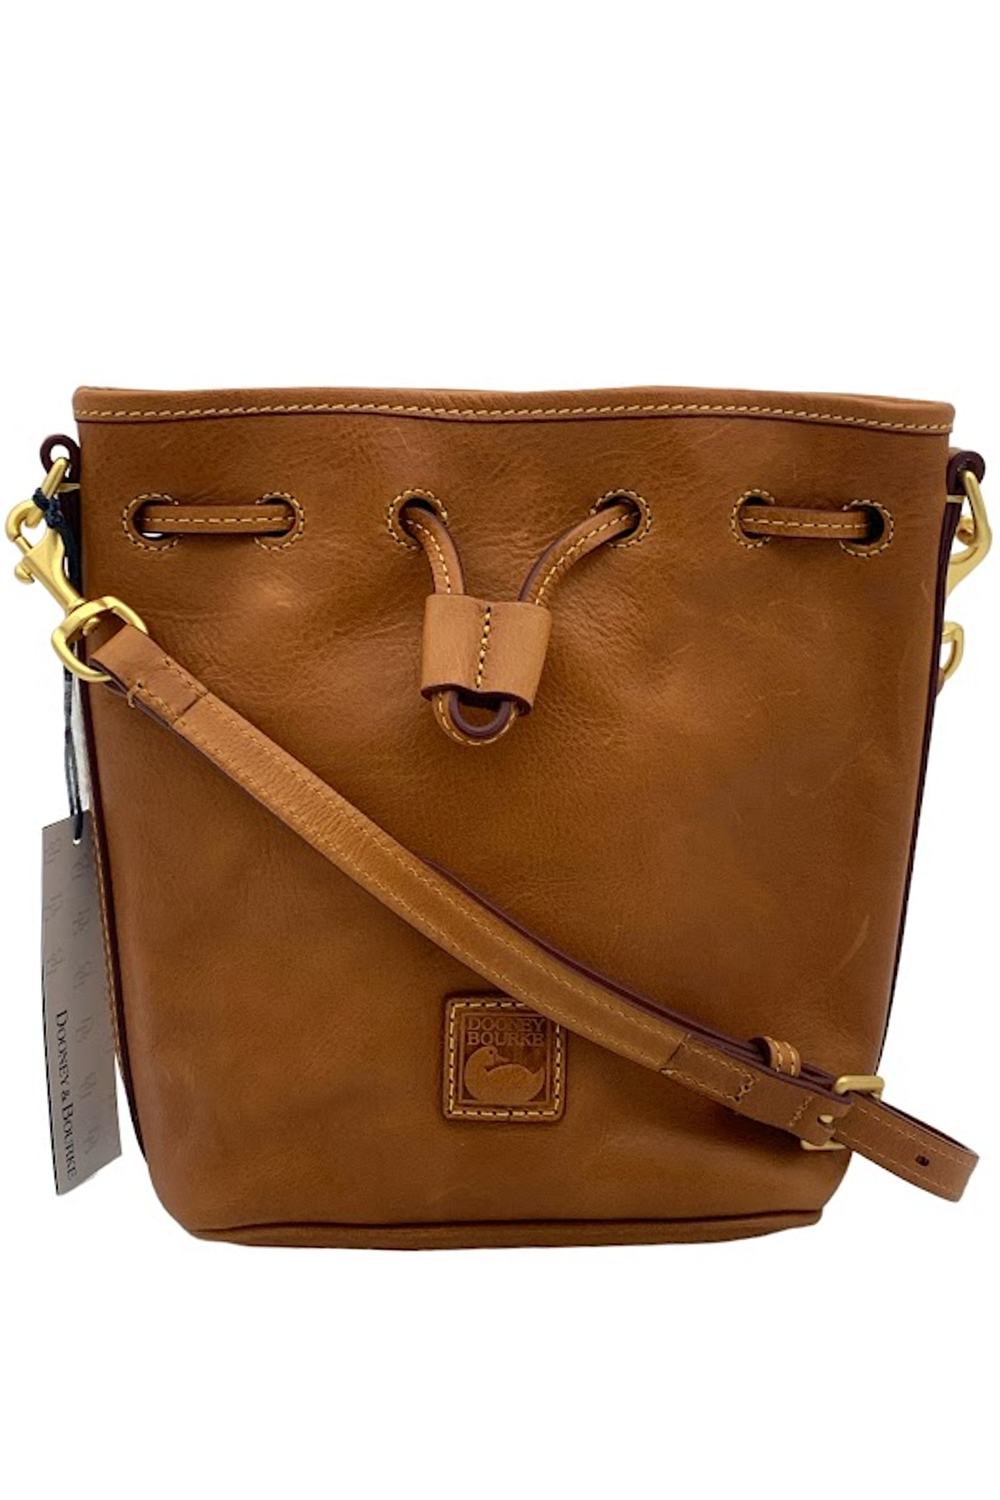 Dooney & Bourke Florentine Hattie Leather Drawstring Bag - Natural